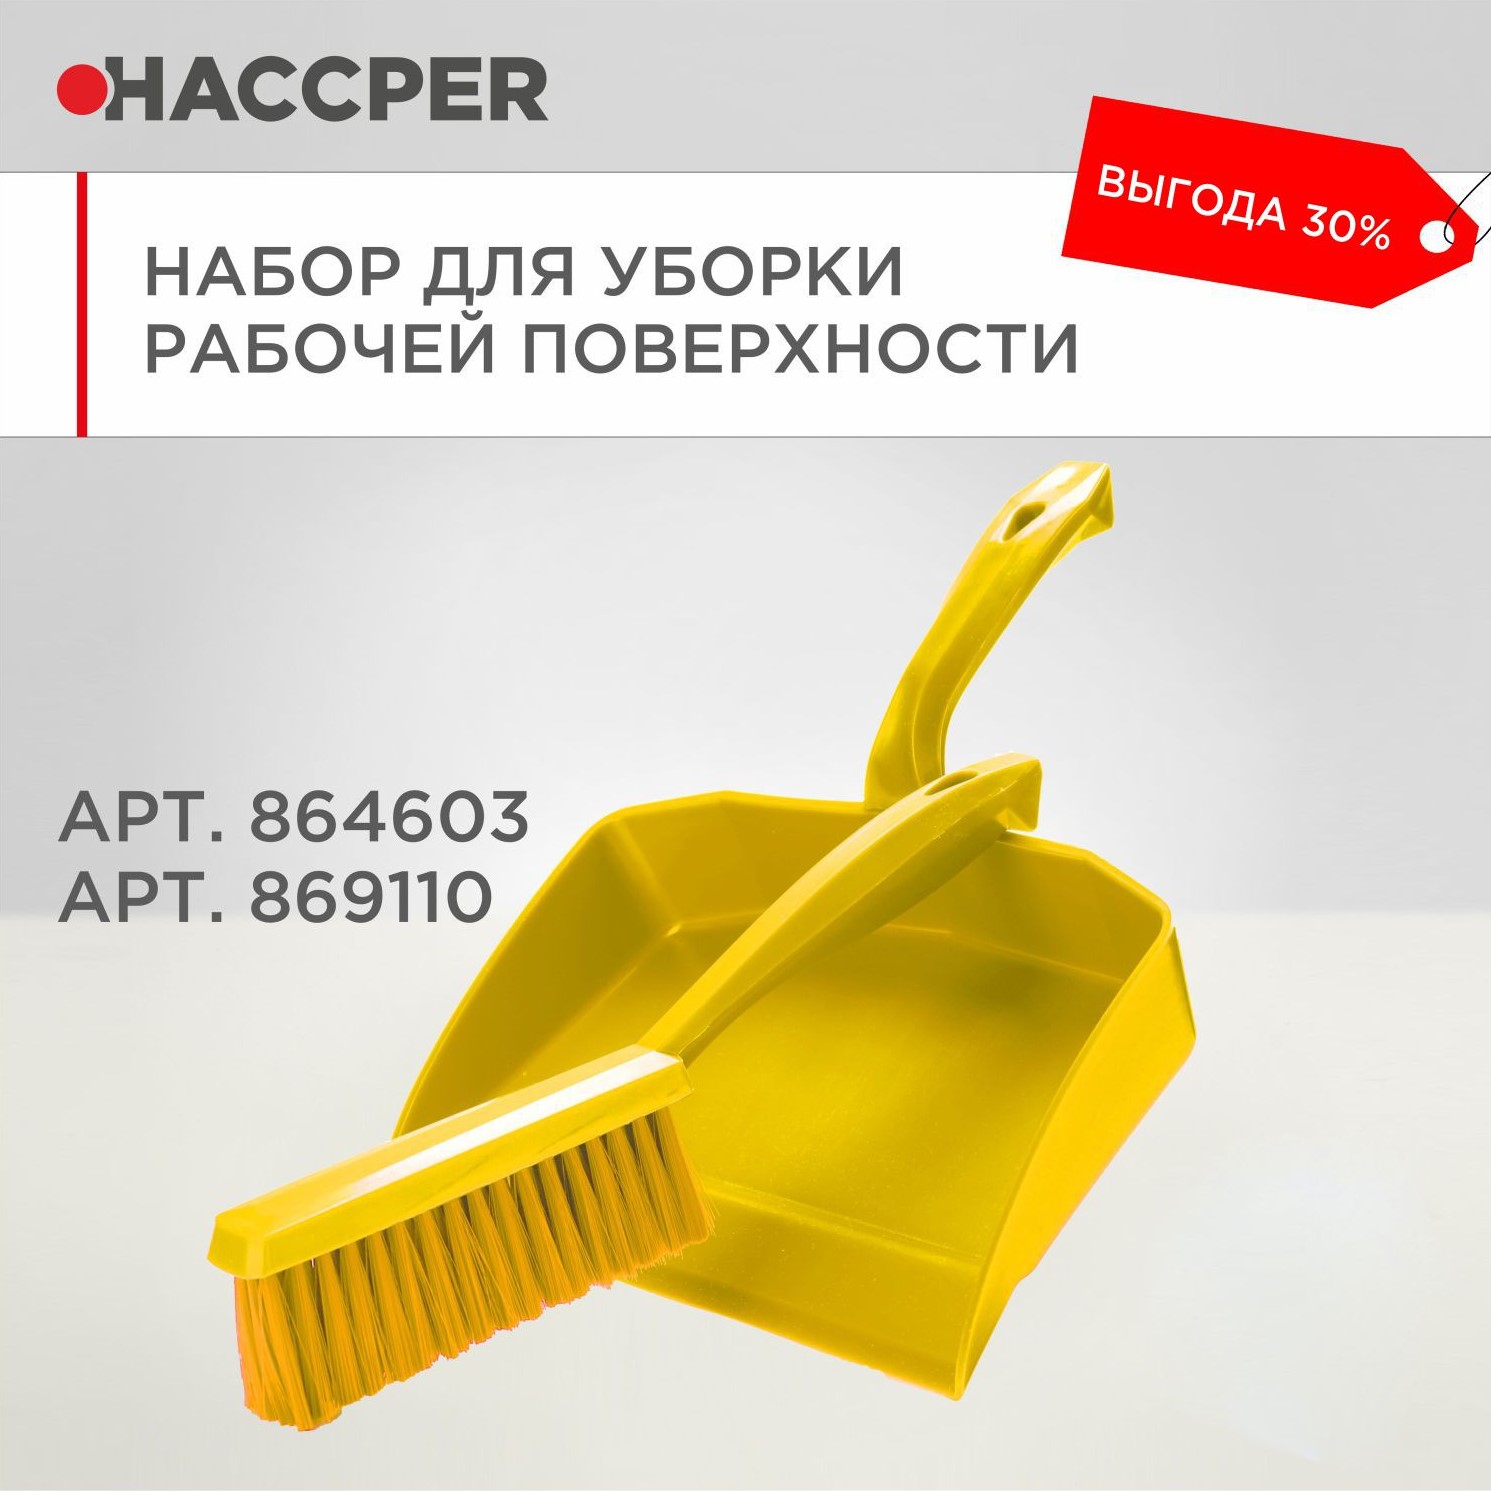 Набор для уборки рабочих поверхностей HACCPER, желтый